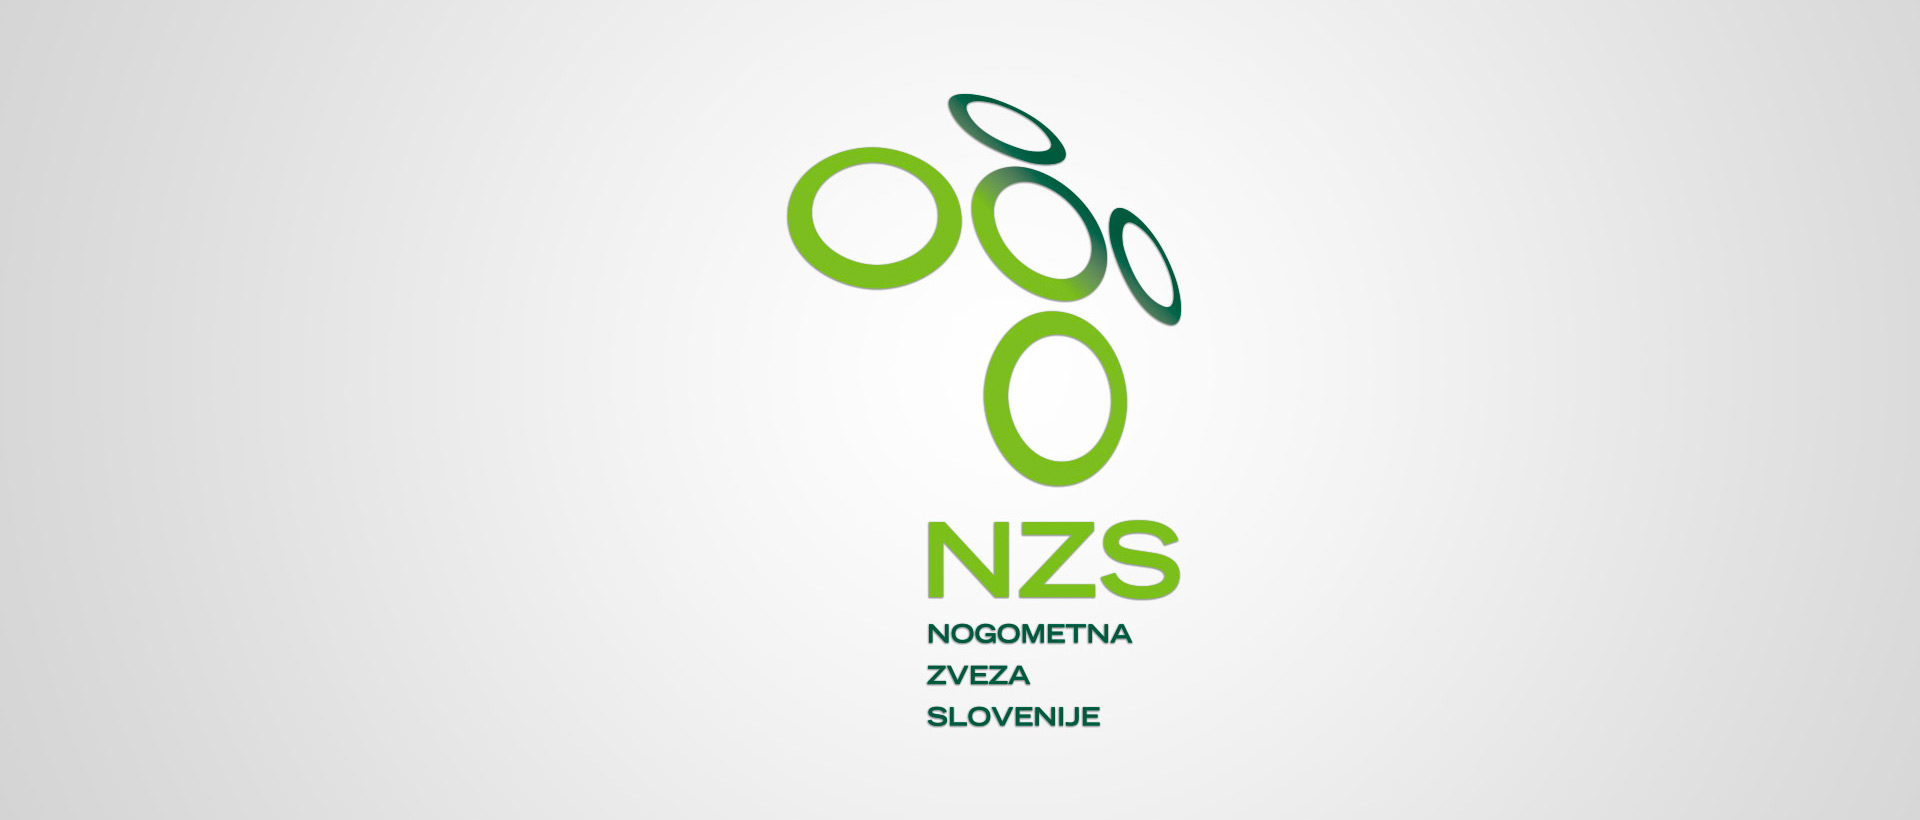 Disciplinski sodnik NZS odločil o odgovornosti NK Maribor